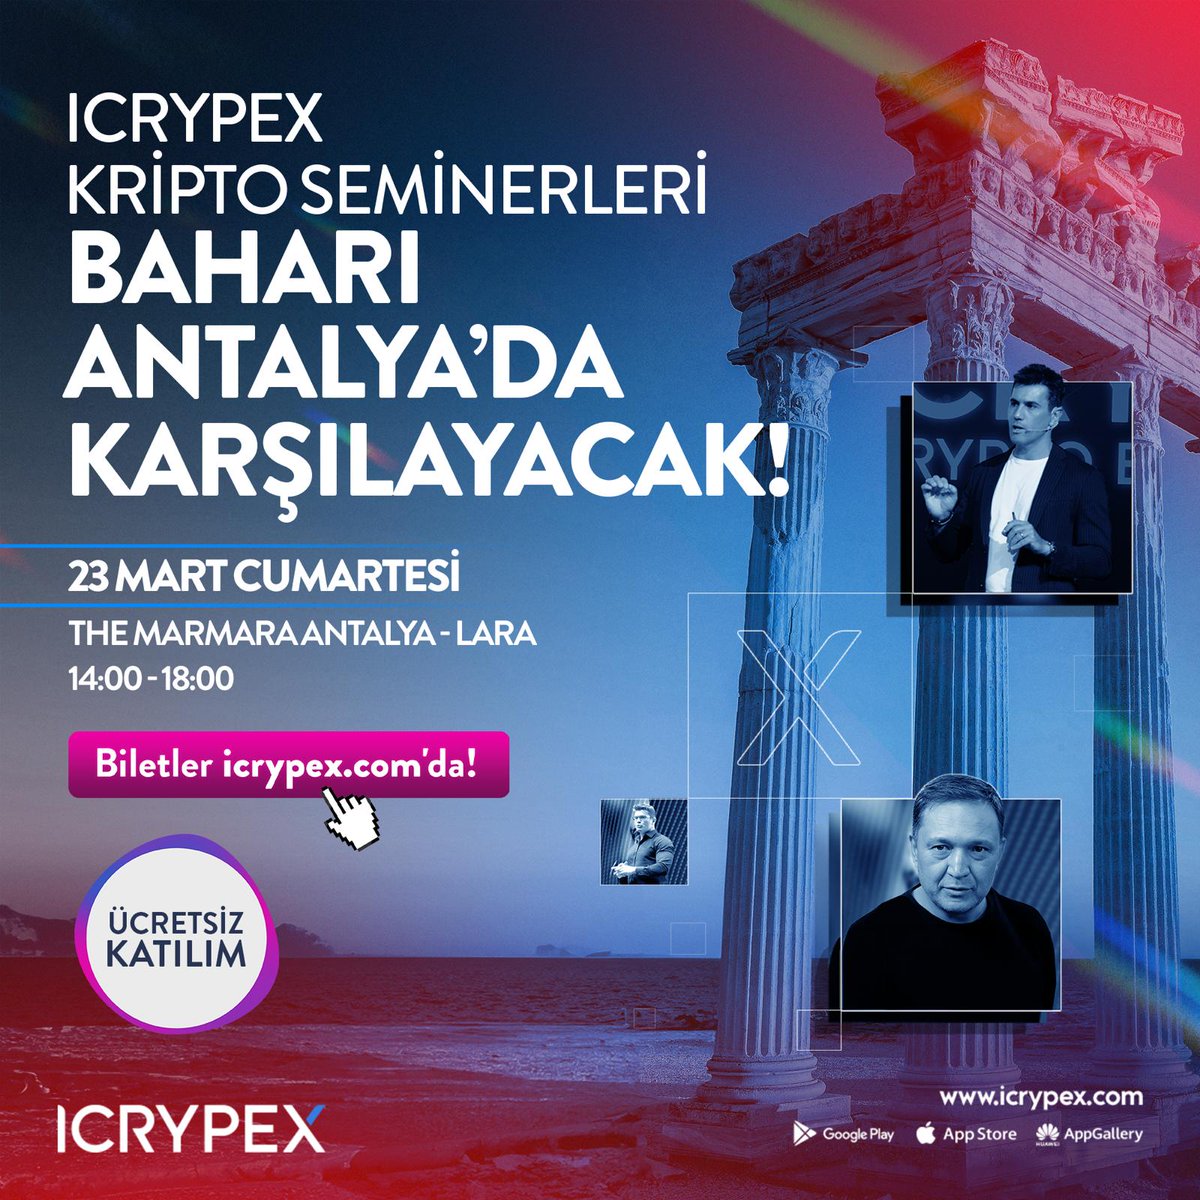 🗣Tedaş 23 Mart'ta Antalya'da... ICRYPEX uzman ekibi ve birbirinden değerli konuklarla kripto semineri, 23 Mart Cumartesi Antalya'da gerçekleşecek! 🗓 THE MARMARA ANTALYA - LARA ⏰ 14.00 - 18.00 🎟 Ücretsiz bilet için aşağıdaki linke tıklayın. bit.ly/47HDJwA